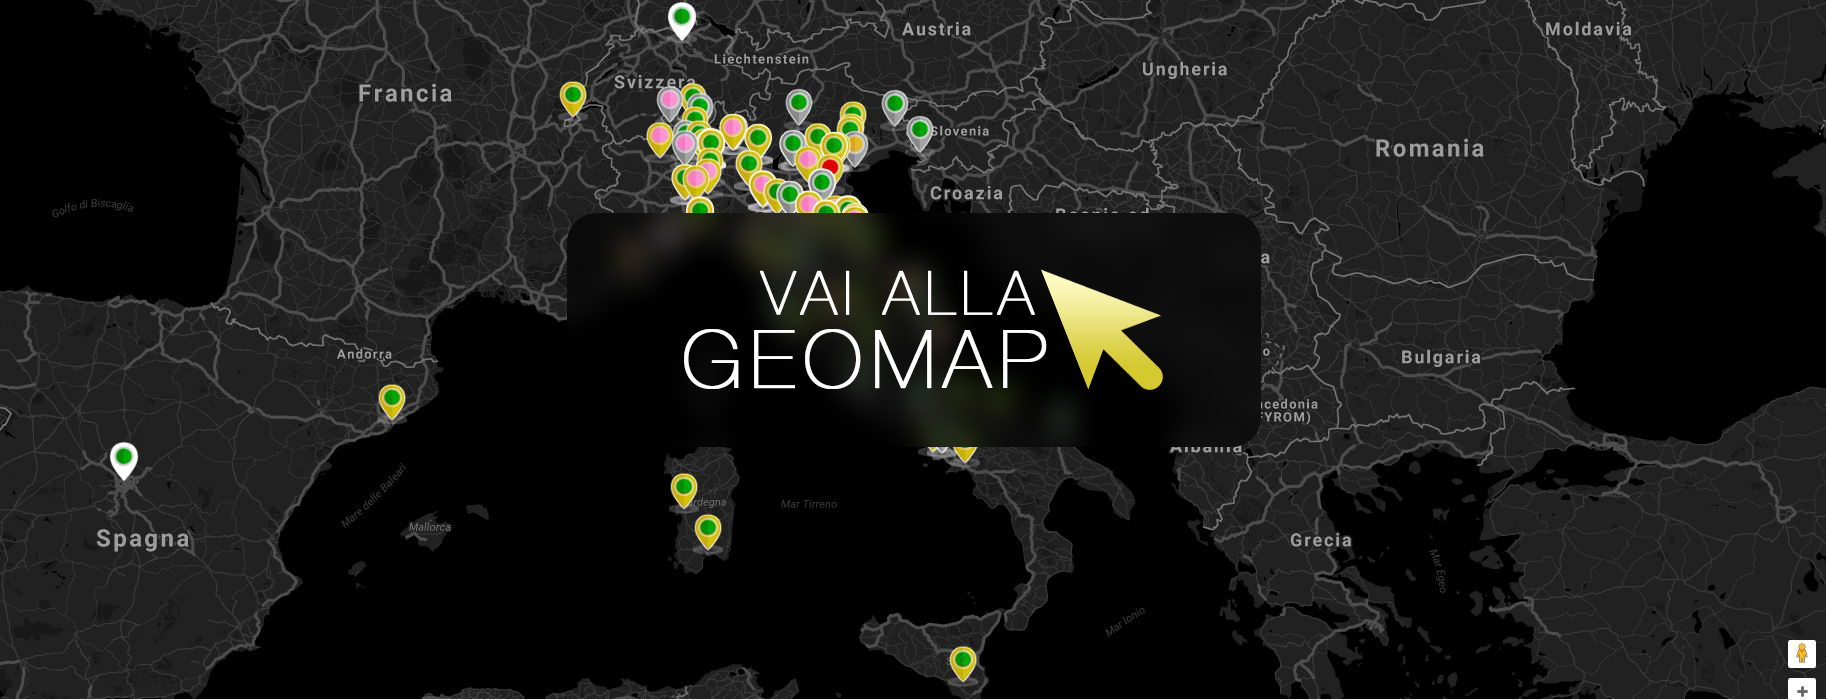 Guarda gli annunci a Varese nella mappa intervattiva